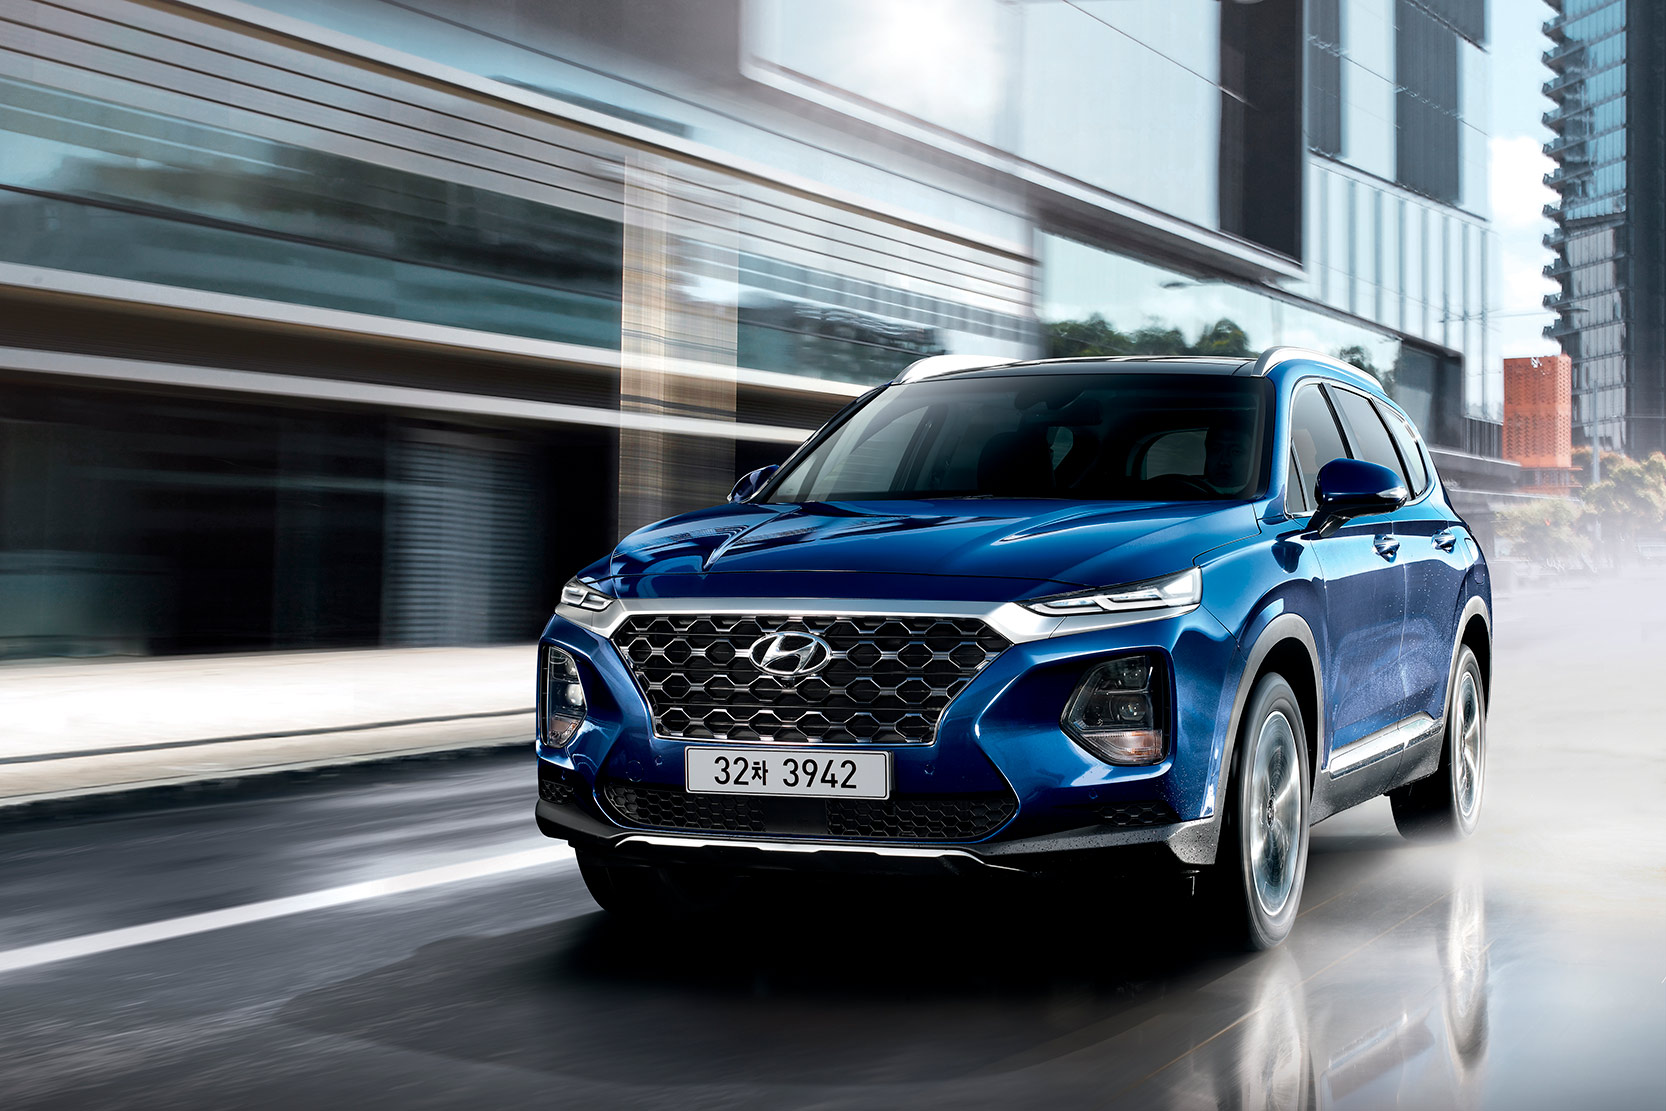 Image principale de l'actu: Hyundai Santa Fe : ses debuts officiels